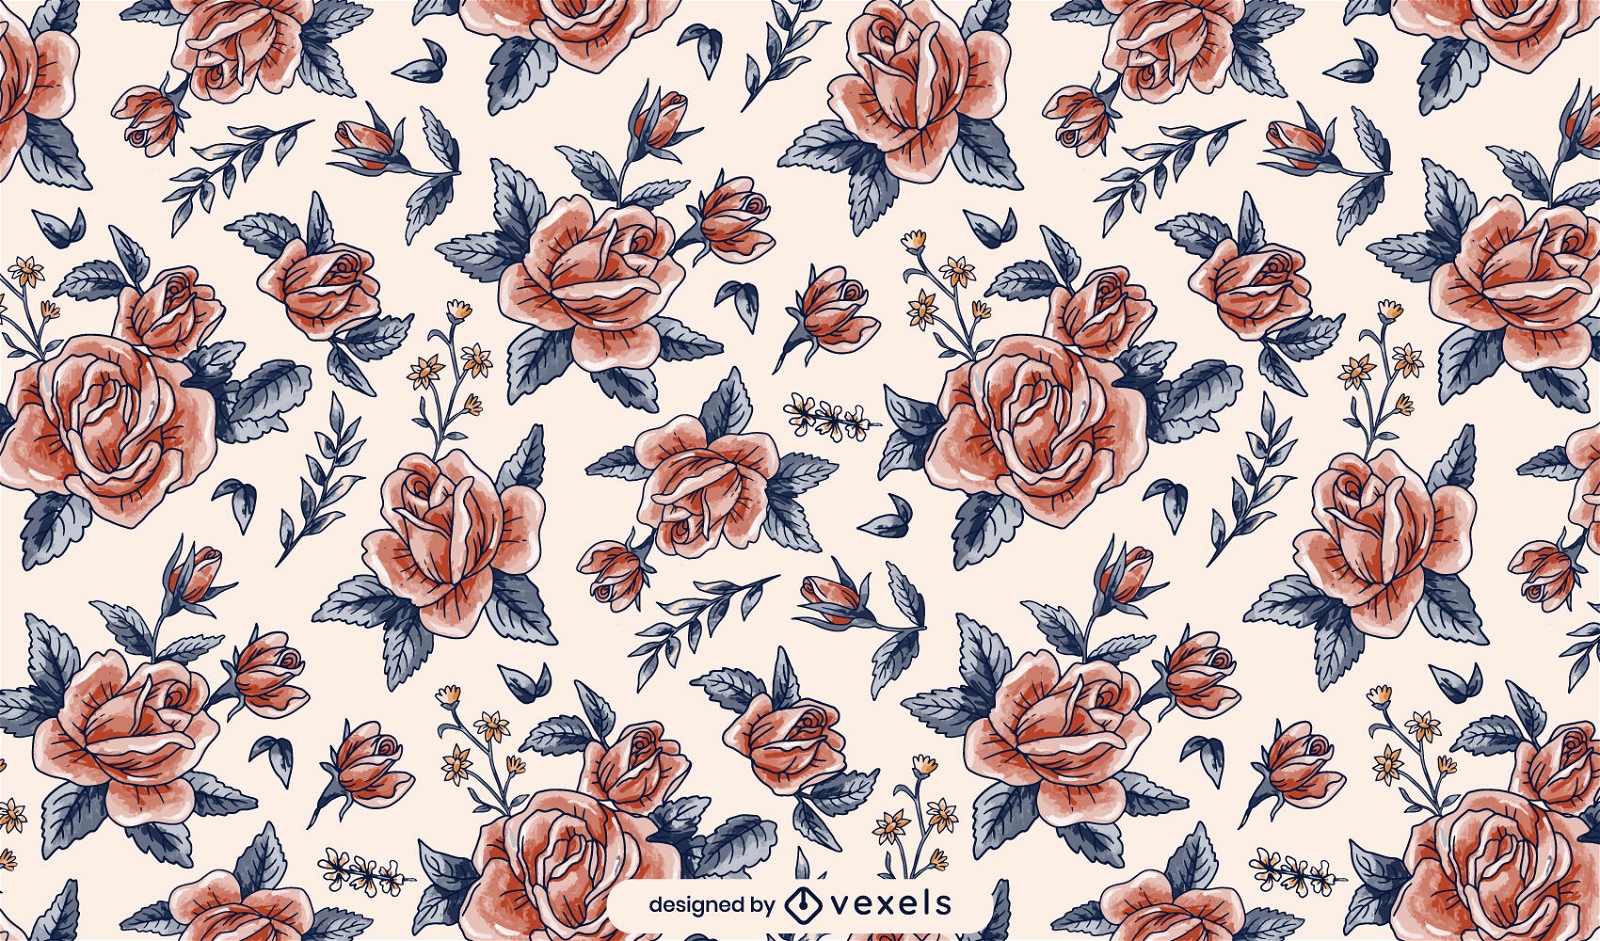 Rose watercolor pattern design